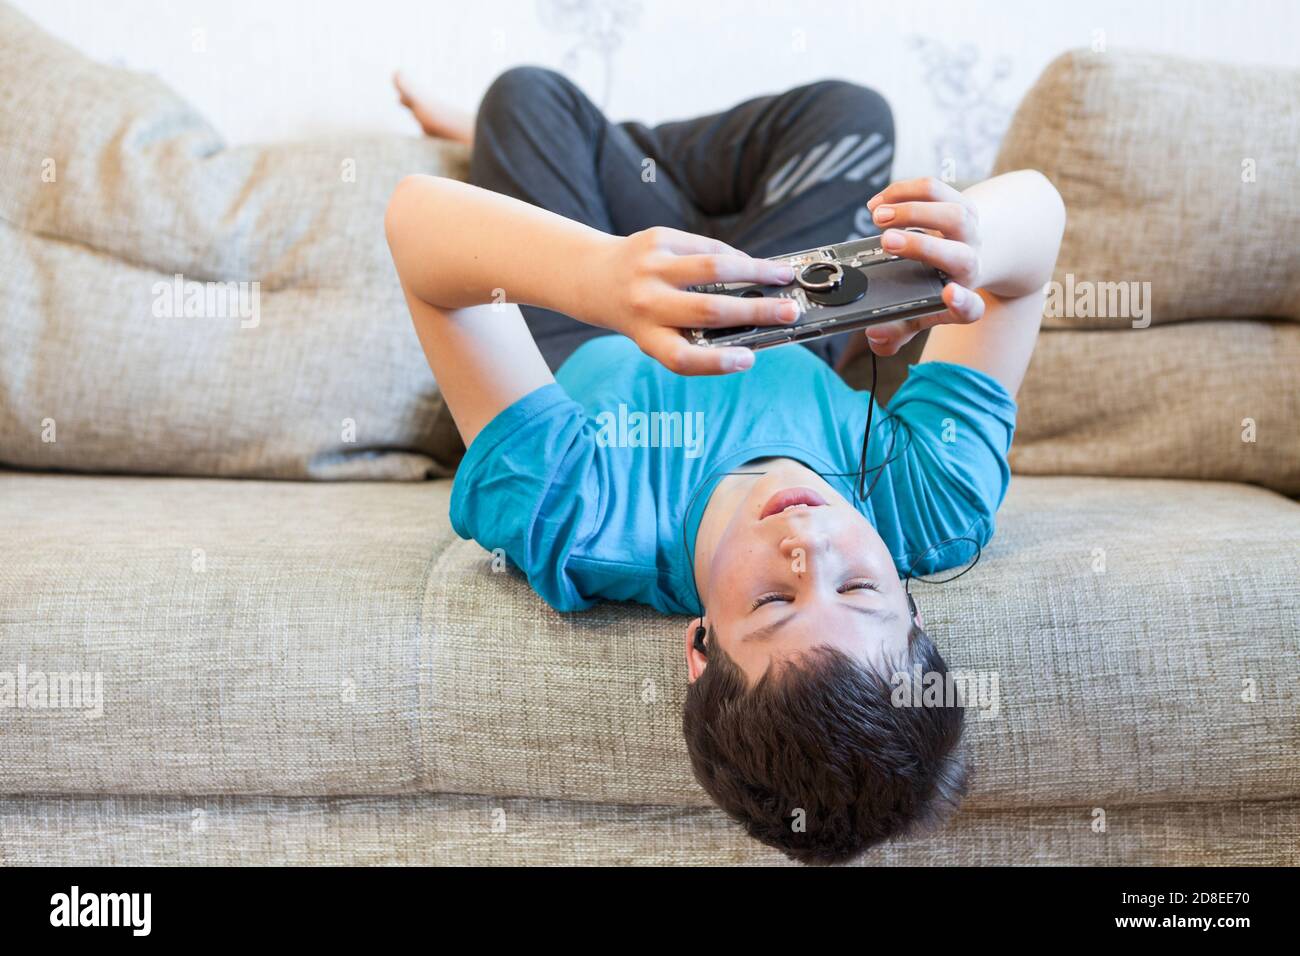 Porträt eines kaukasischen Teenagers mit großem Smartphone oder Spielkonsole in den Händen, der über soziale Medien spielt oder sich einlässt, während er auf dem Sofa liegt Stockfoto